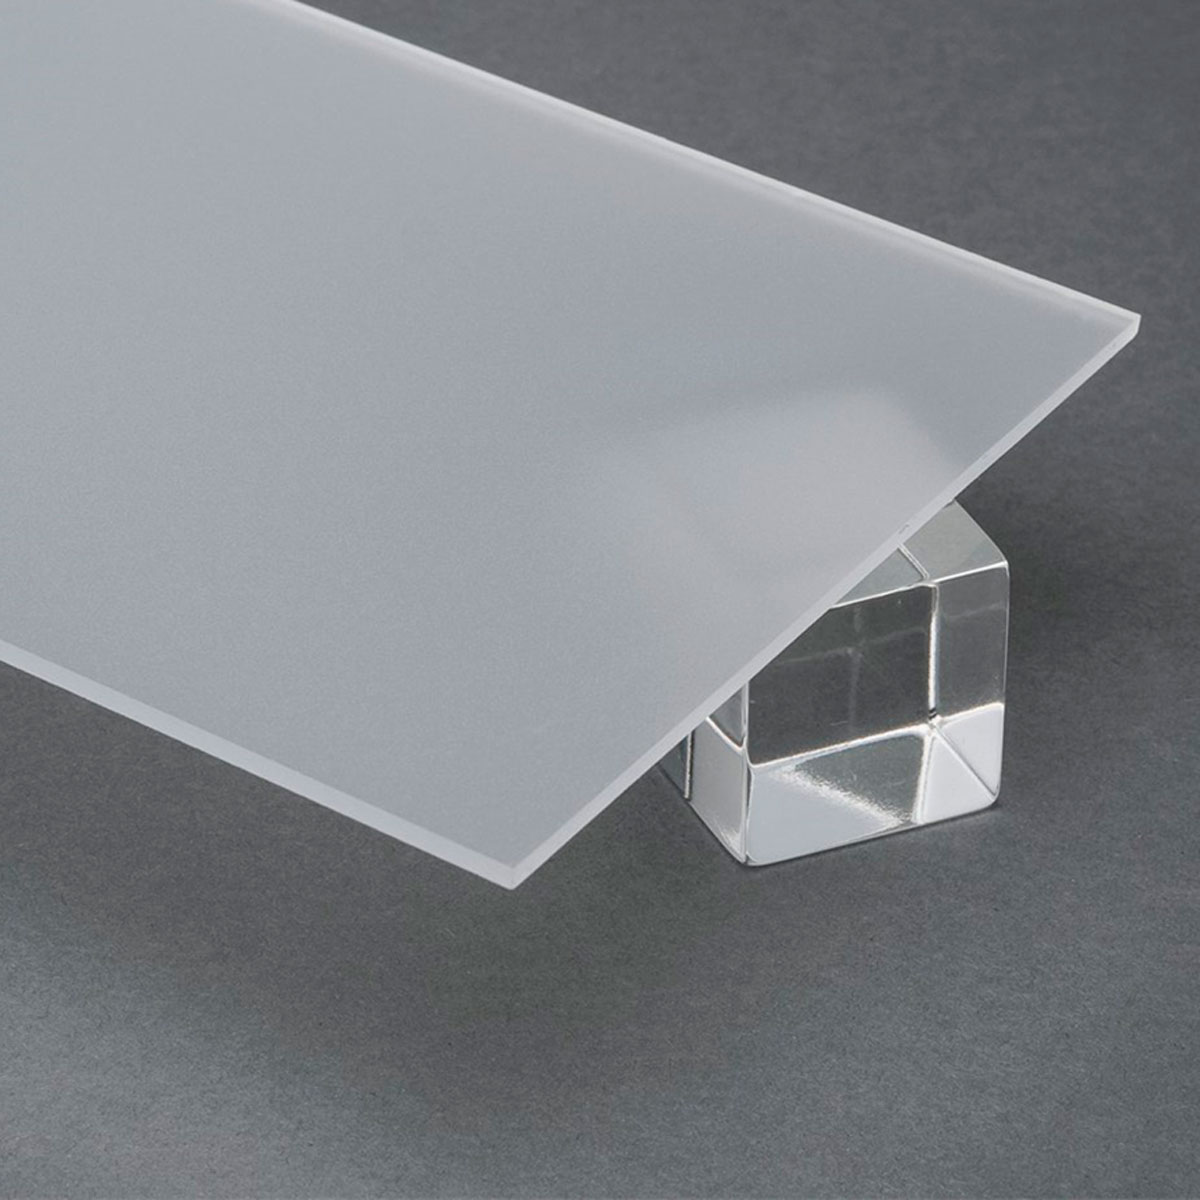 Vidrio plástico transparente liso de 2 mm de grosor y 50x50cm